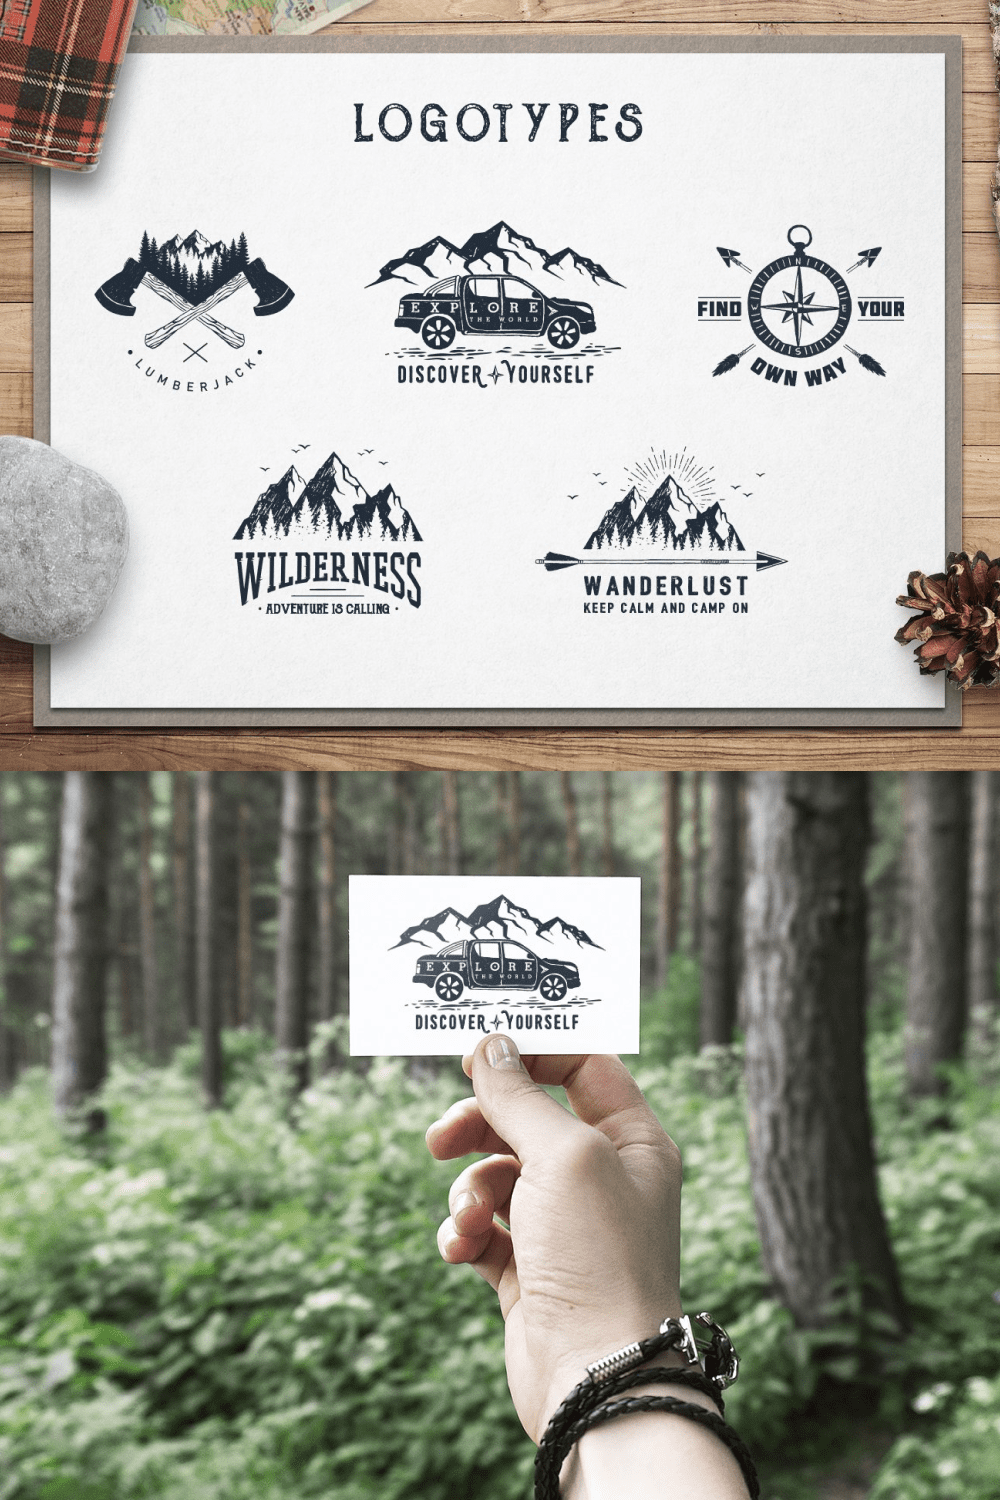 3 wanderlust. 15 double exposure logos